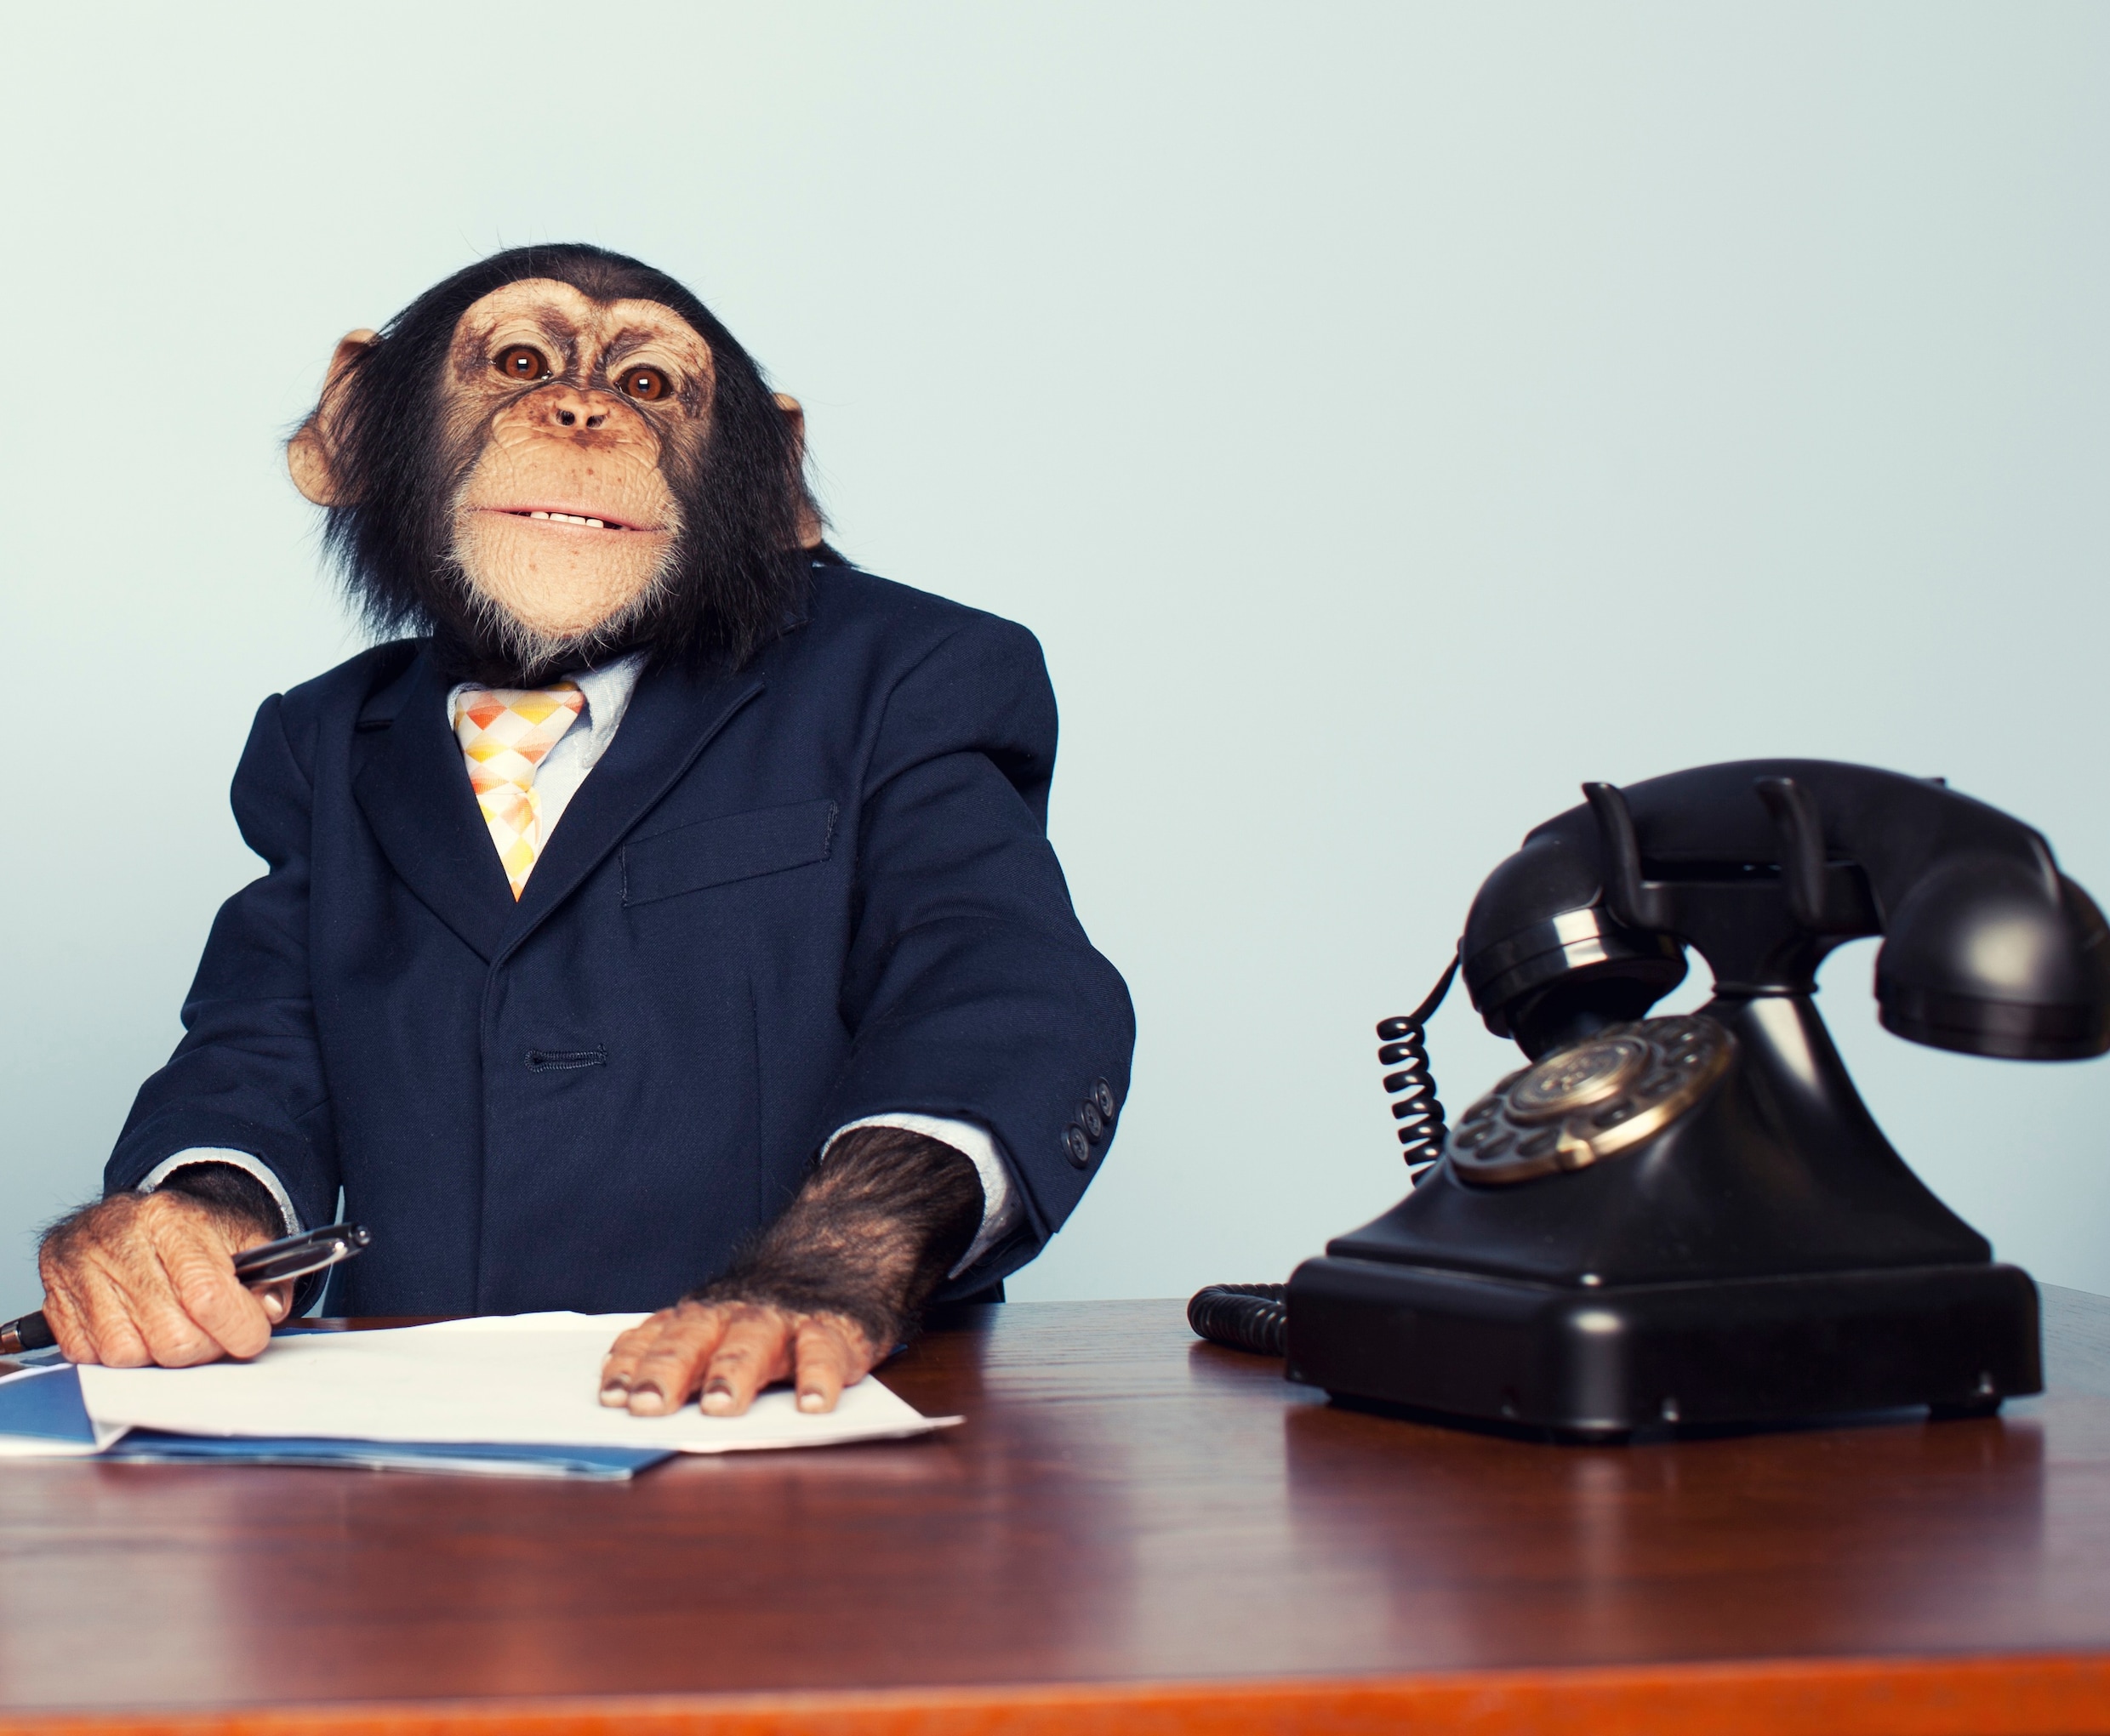 We zijn aangeklede apen die zich vermommen als schrijnwerkers, sales managers en tandartsen